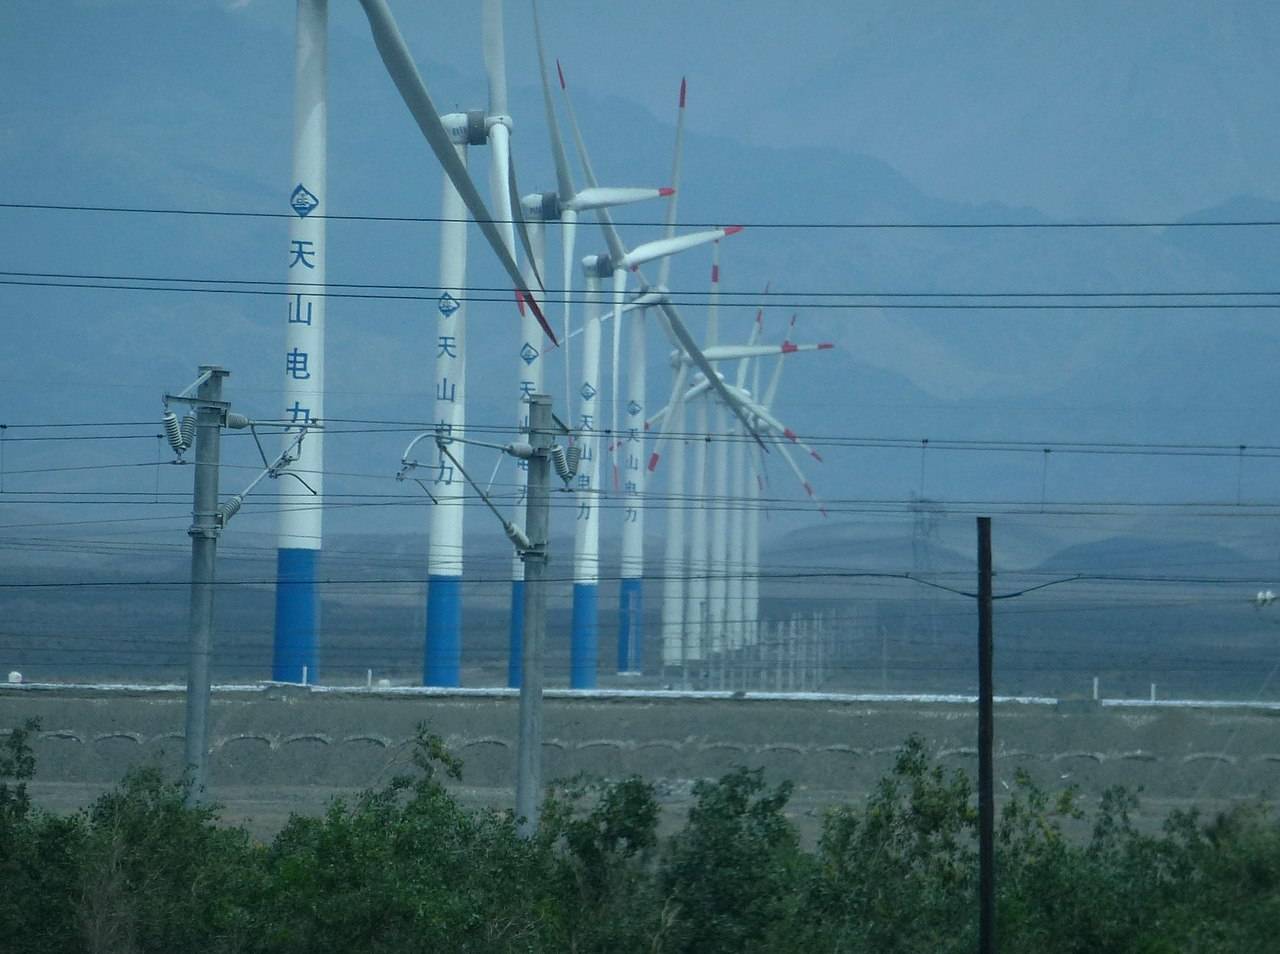 המערב מפסיד לסין ביישום אנרגיה ירוקה